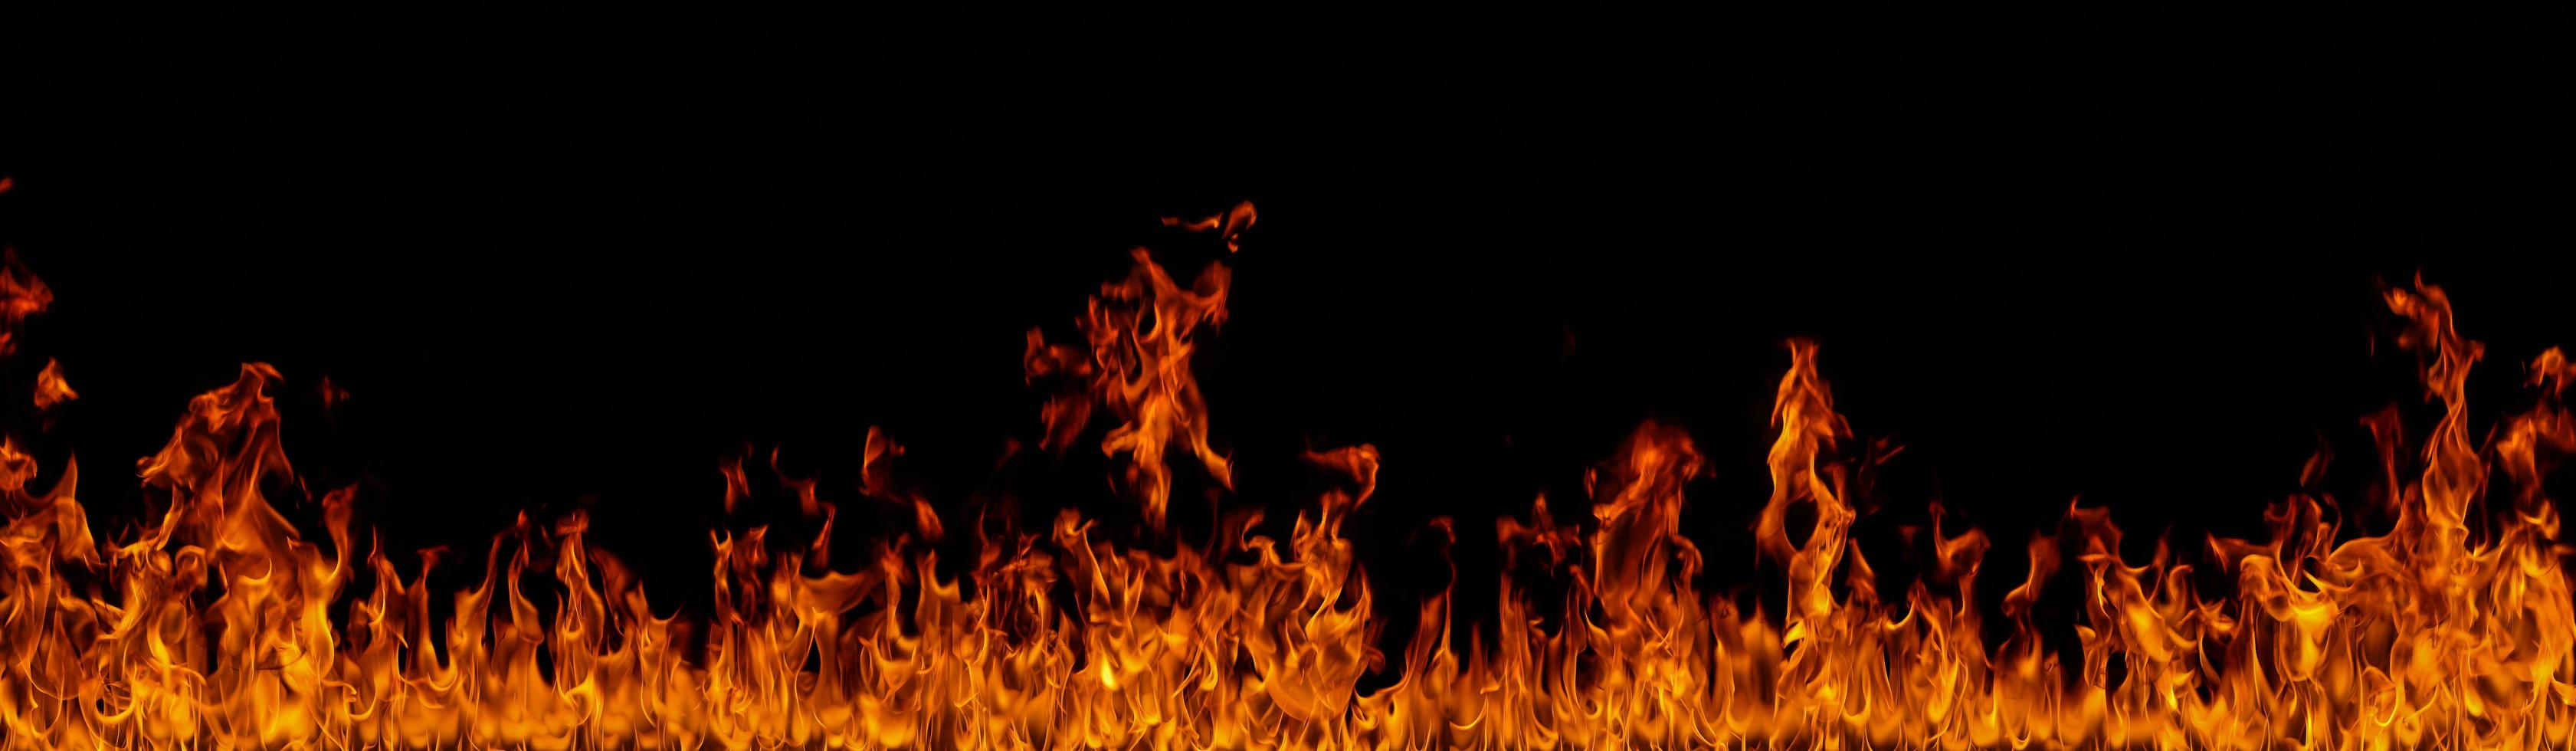 Feuerflammen auf schwarzem Hintergrund foto